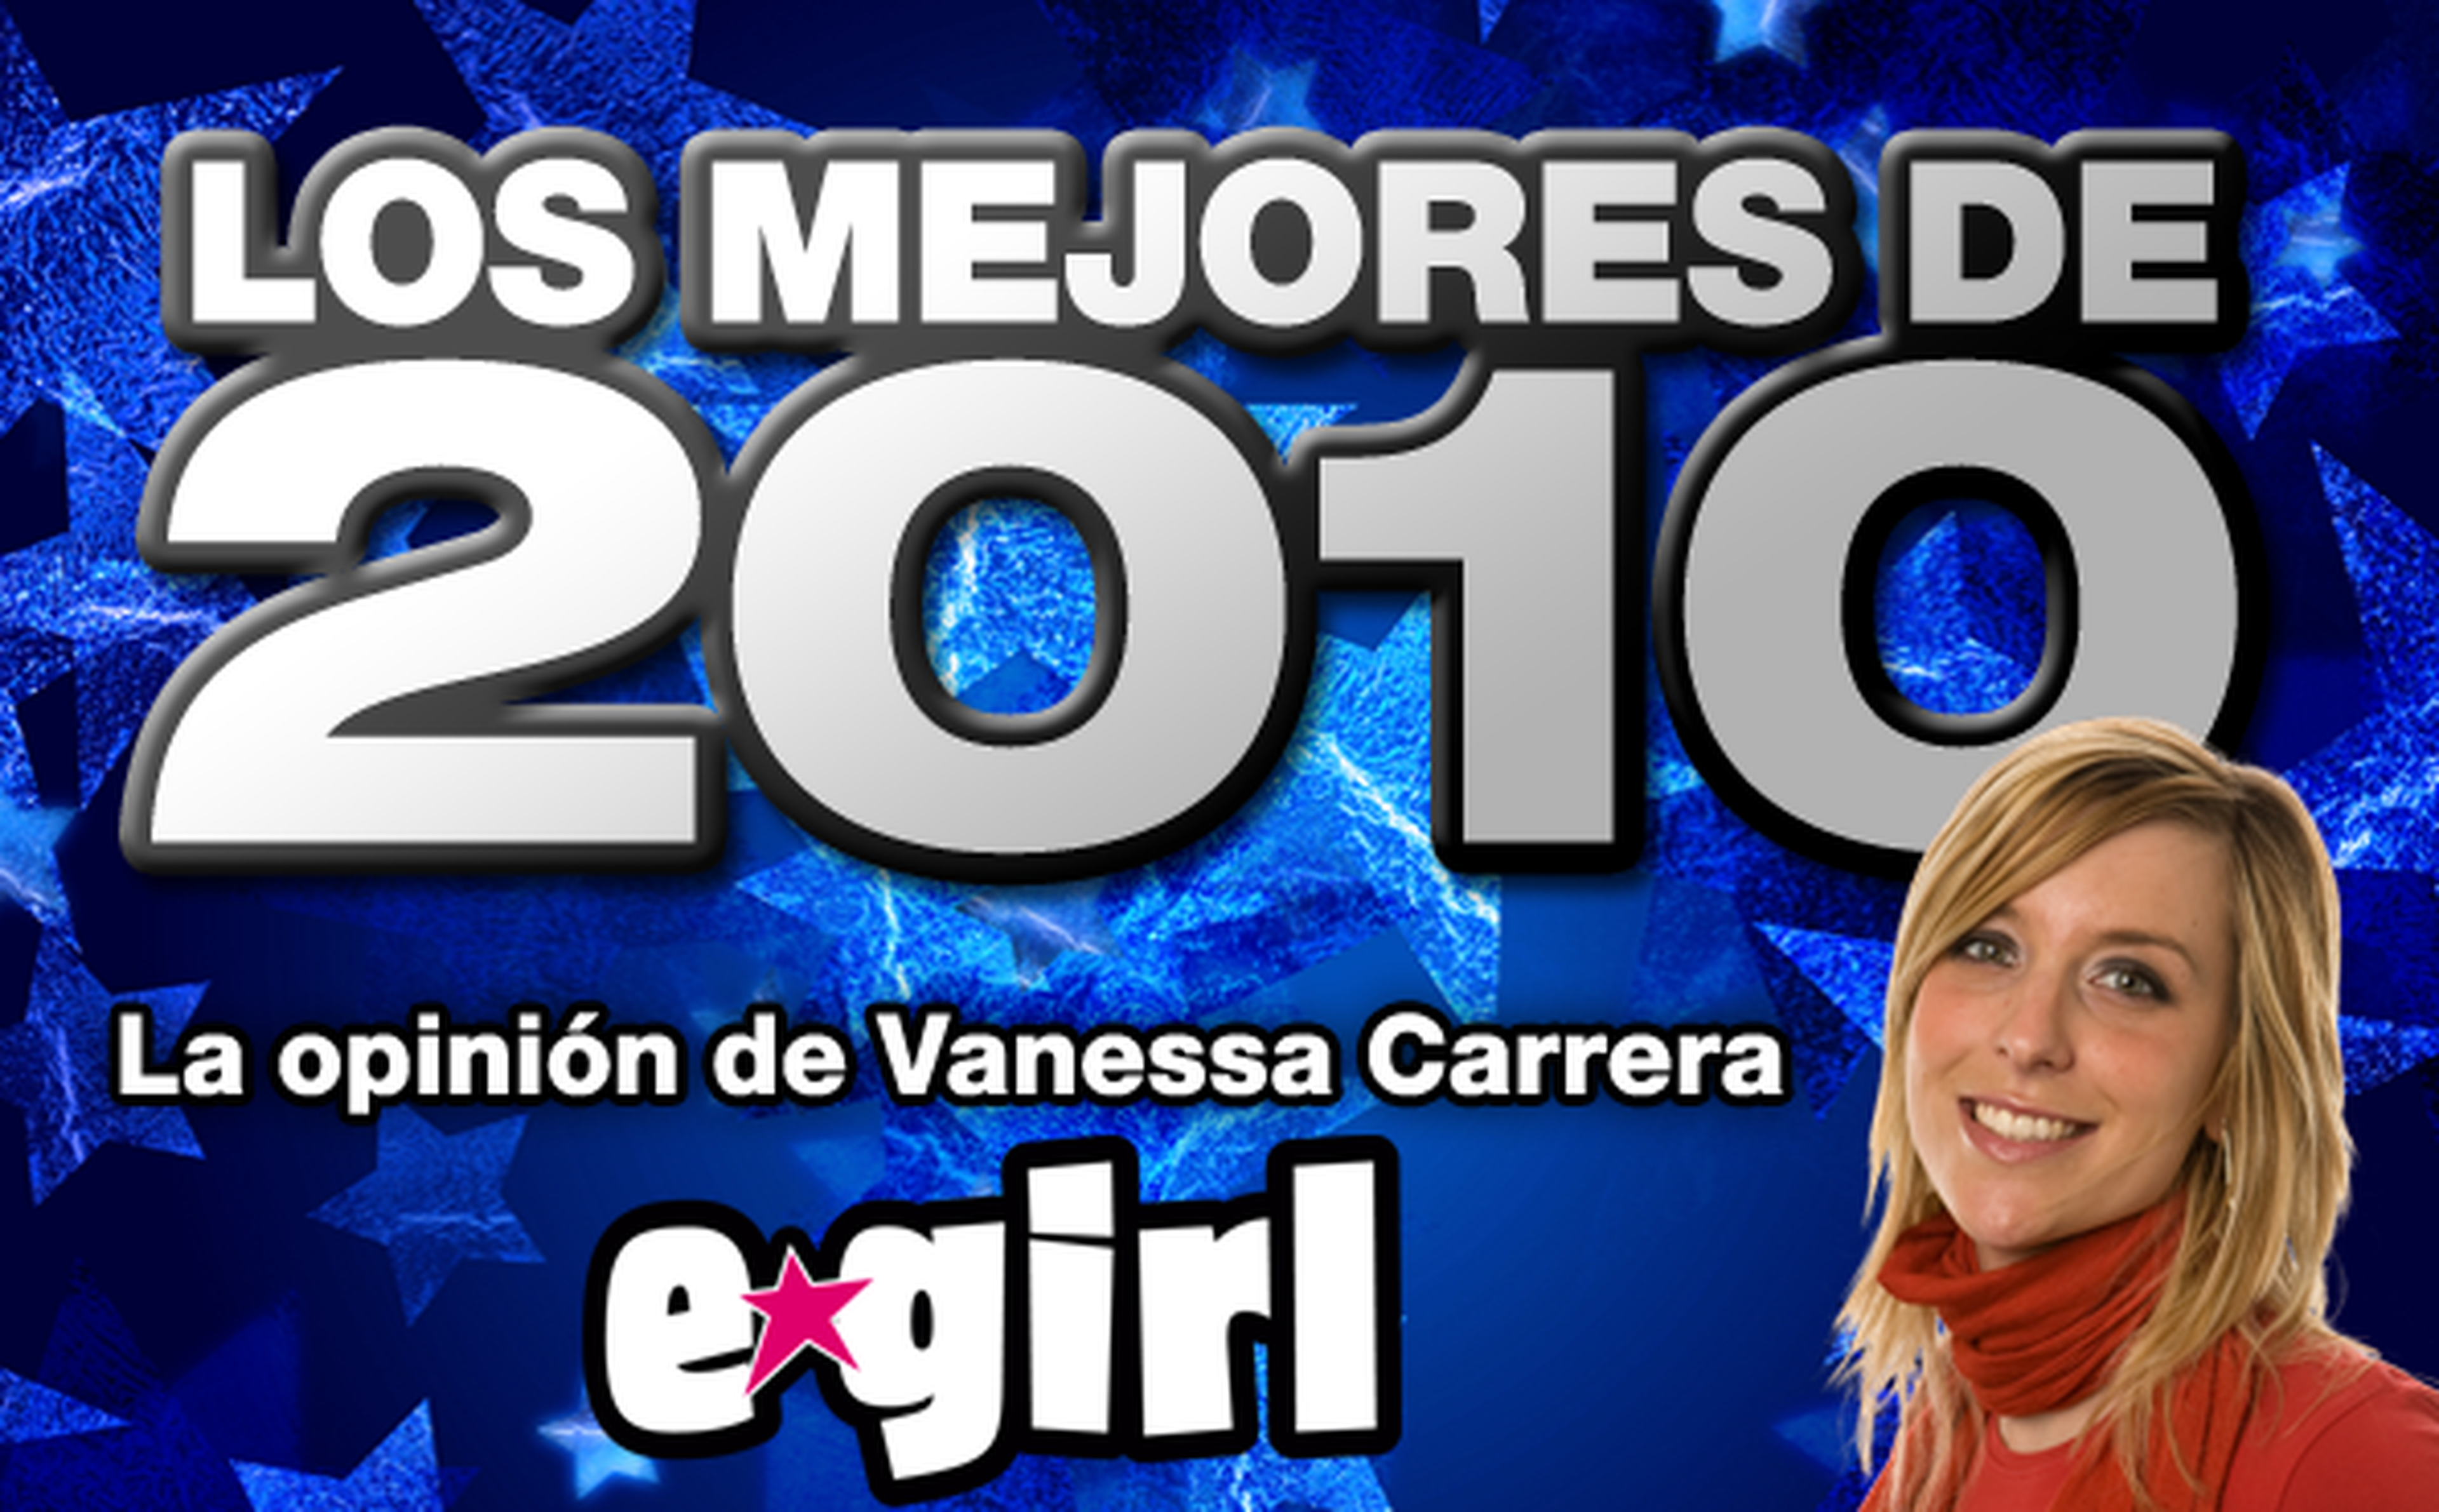 Los mejores de 2010: Vanessa Carrera